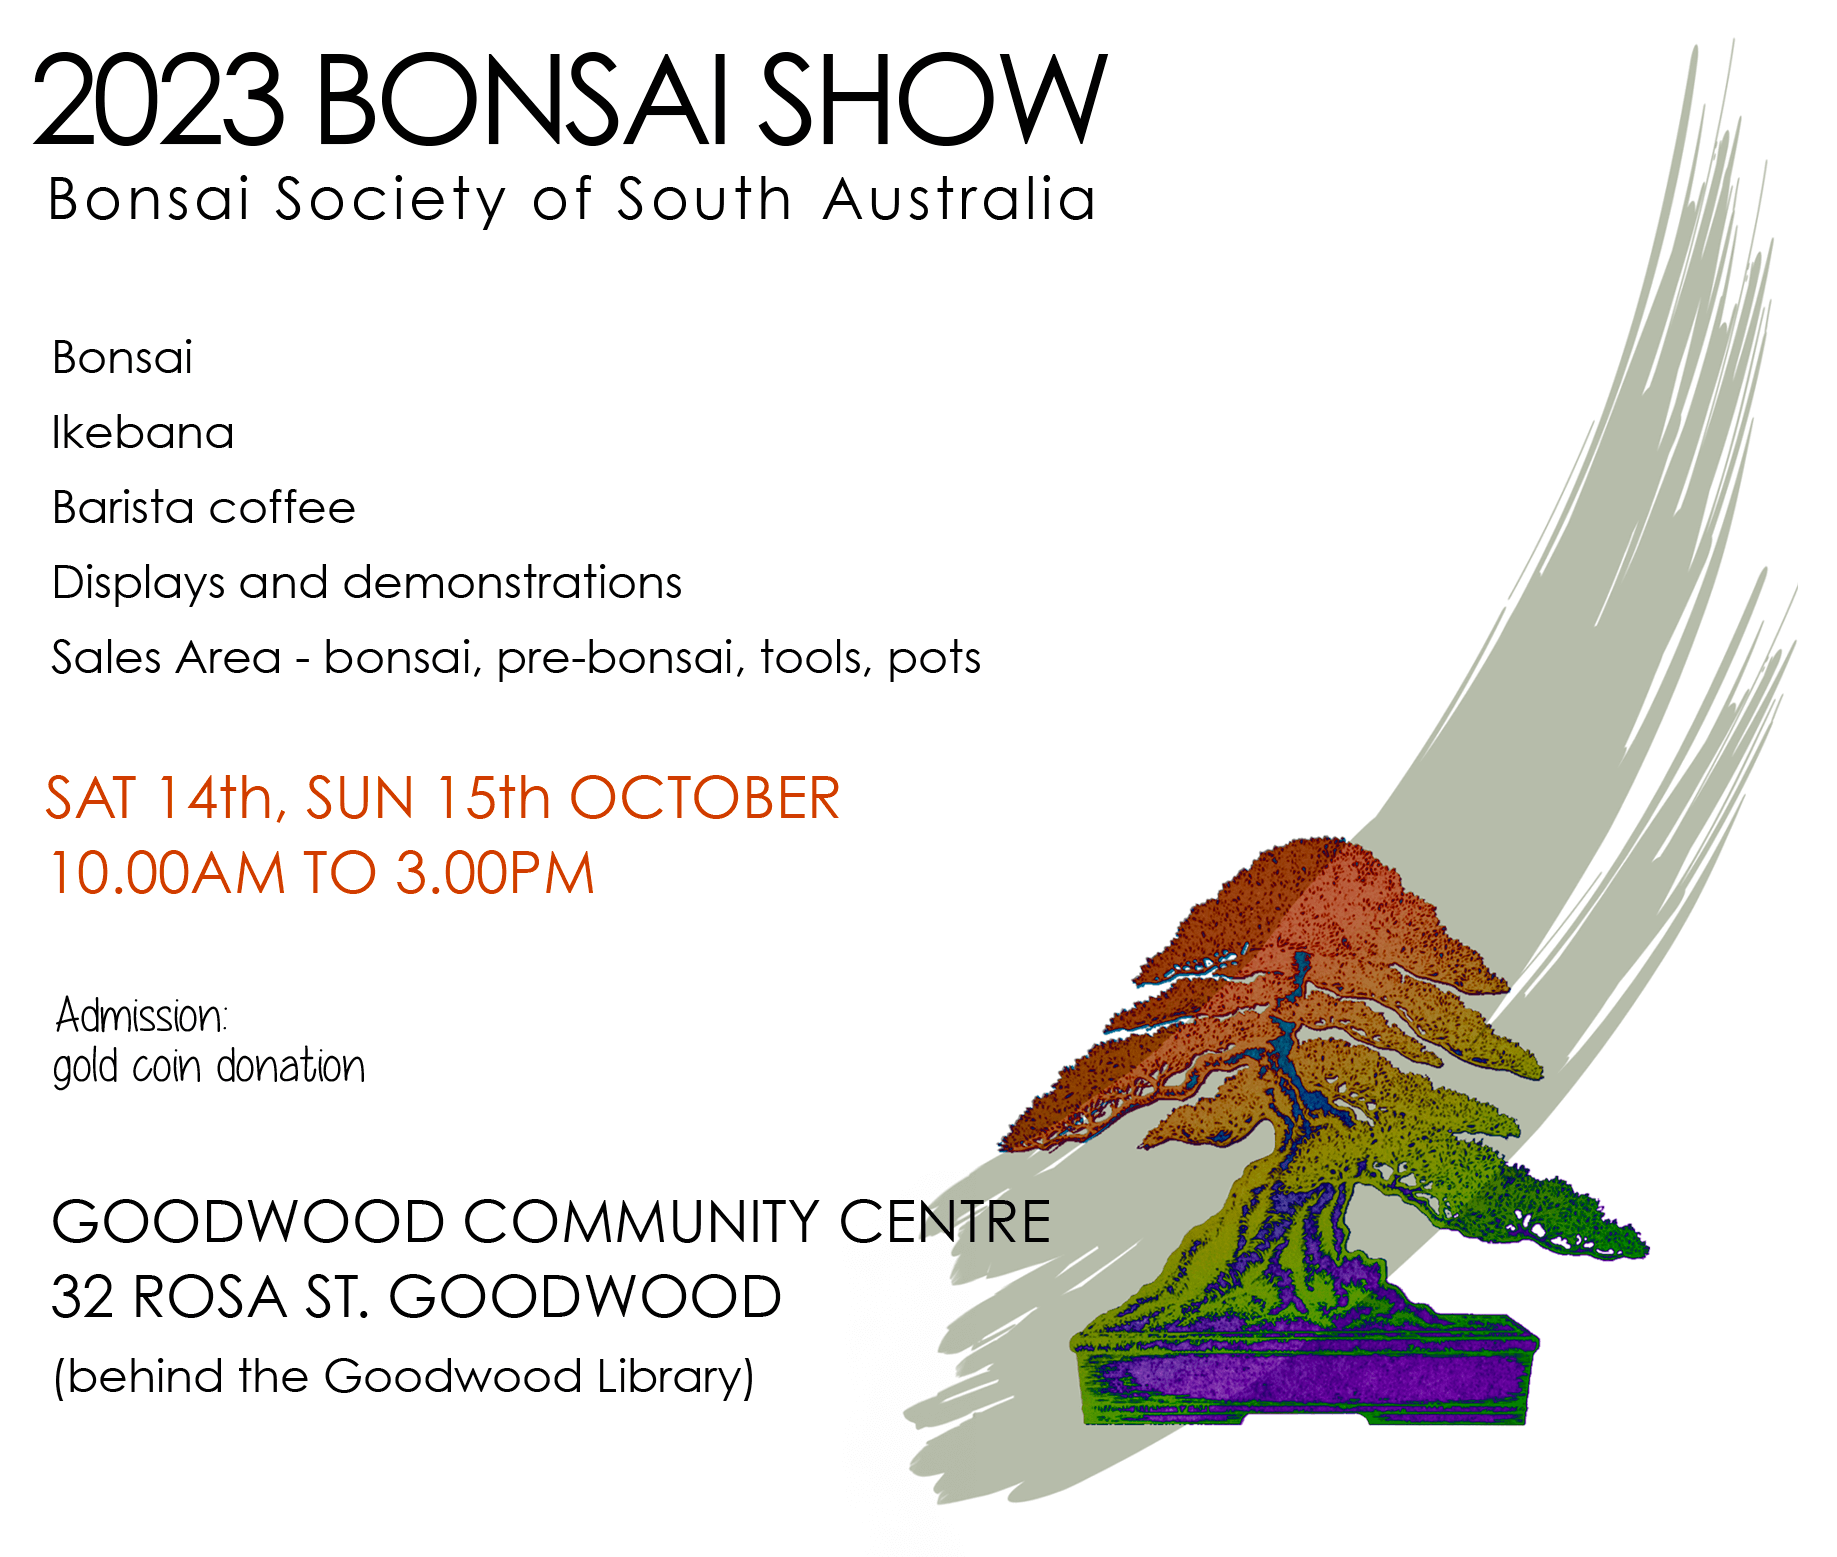 2023 Bonsai Show